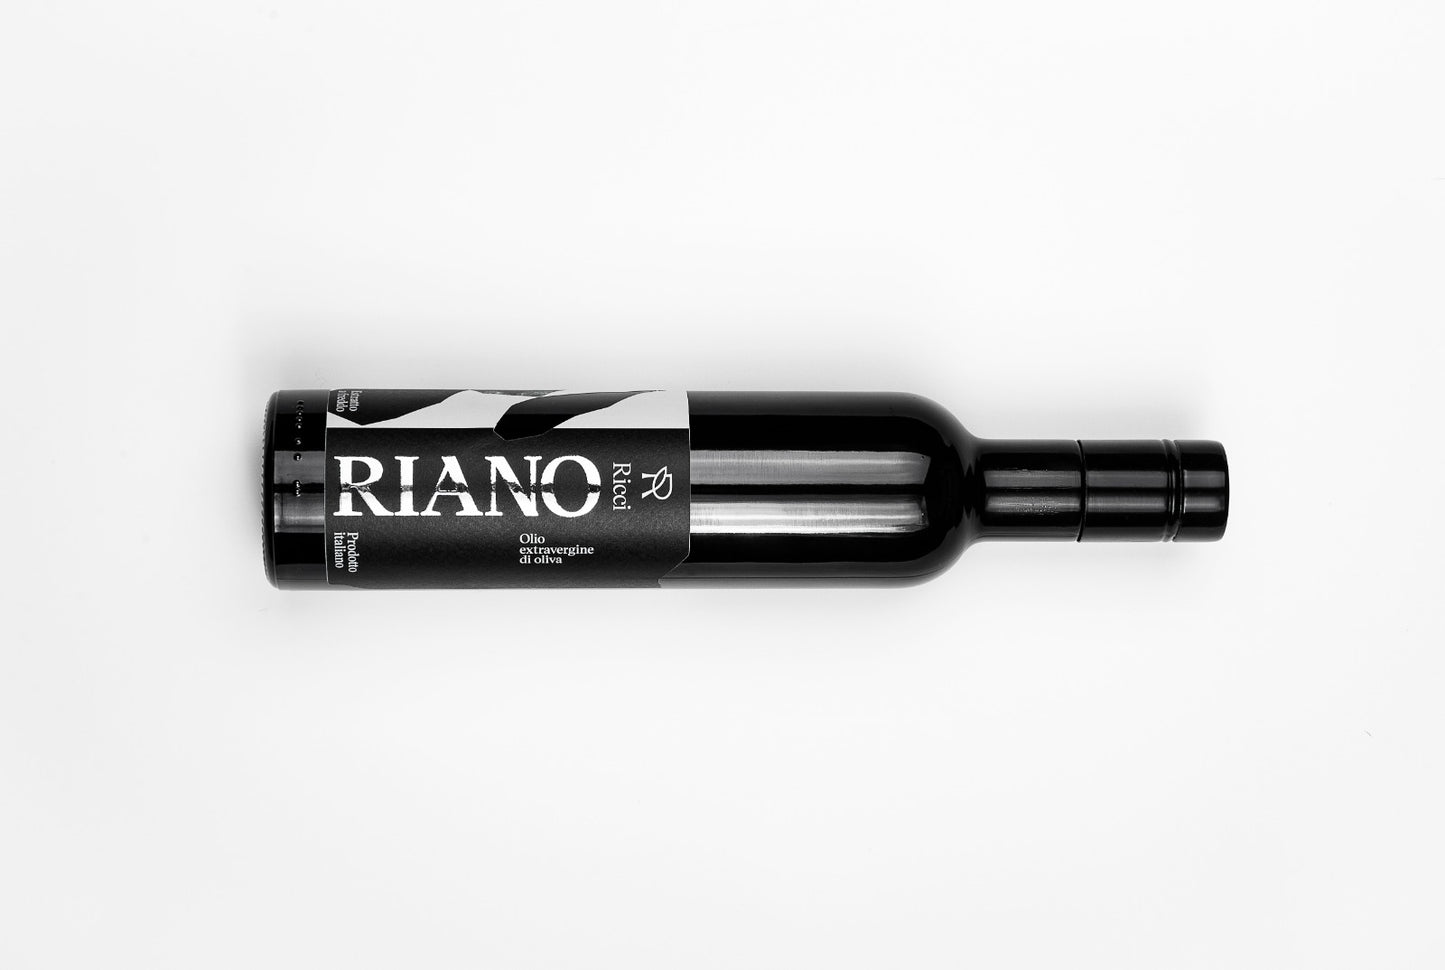 EVO RIANO 100% Italian, Blend Moraiolo-Frantoio 0,5 Lt